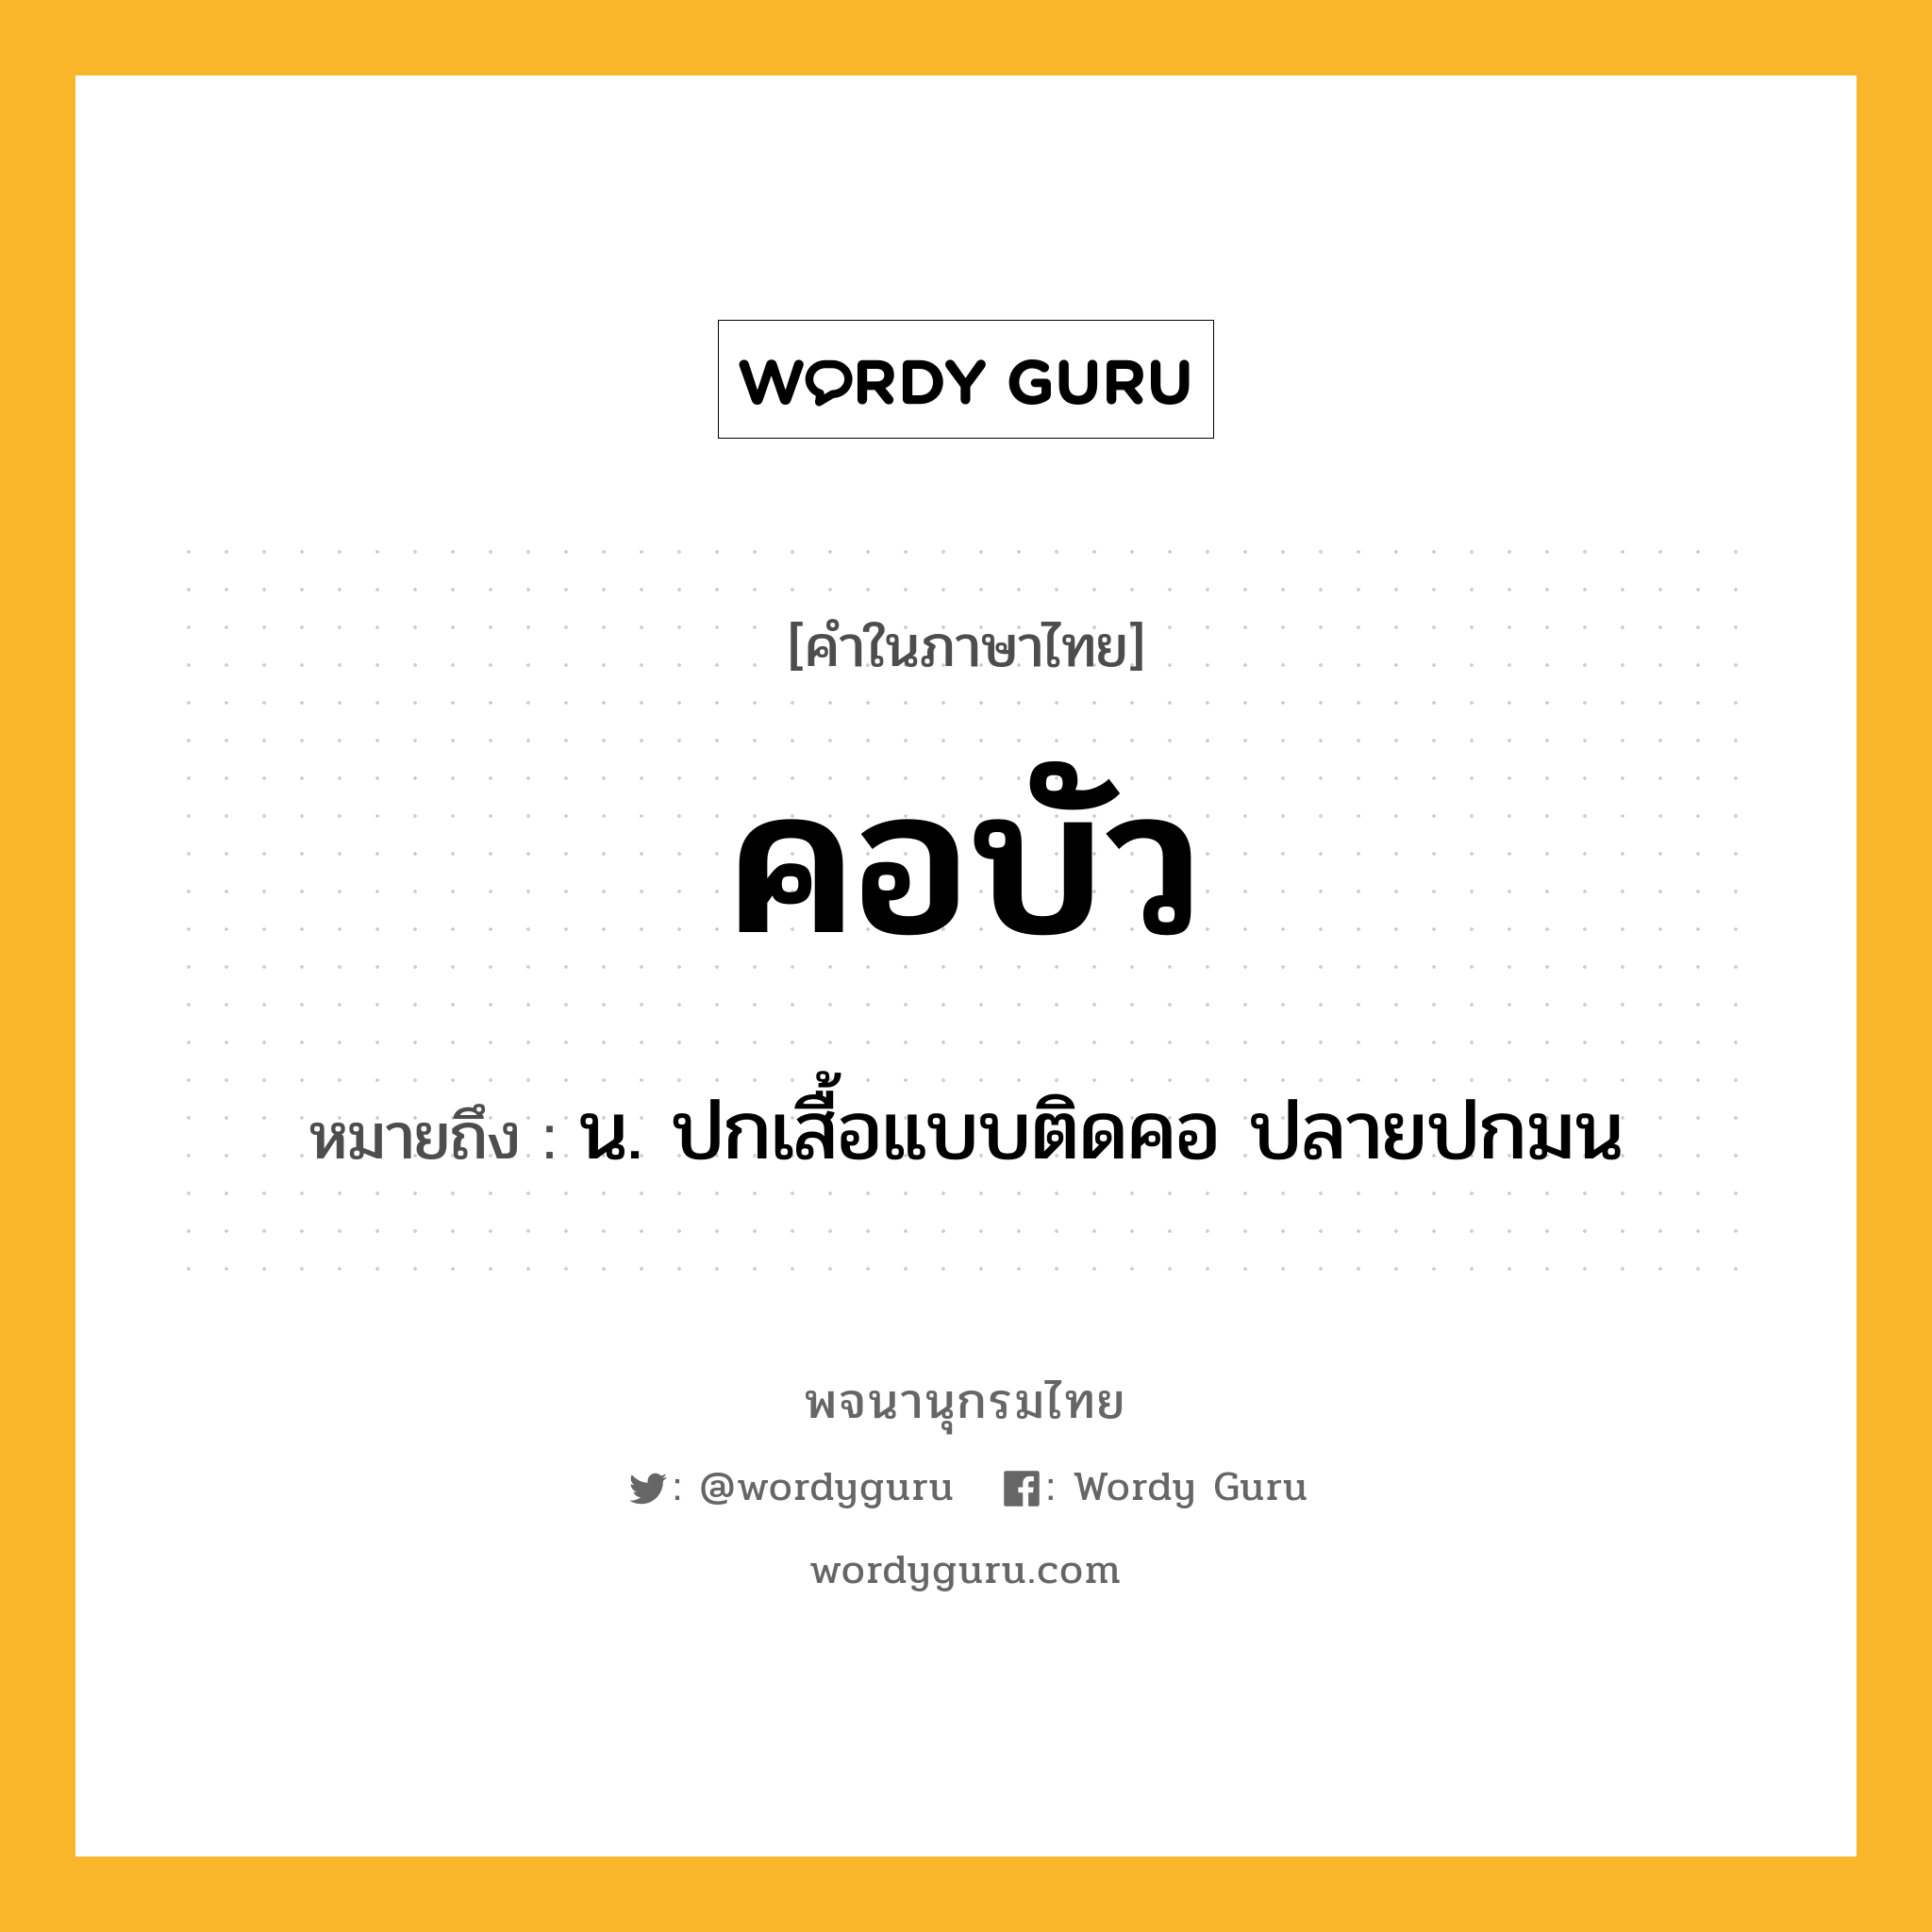 คอบัว หมายถึงอะไร?, คำในภาษาไทย คอบัว หมายถึง น. ปกเสื้อแบบติดคอ ปลายปกมน